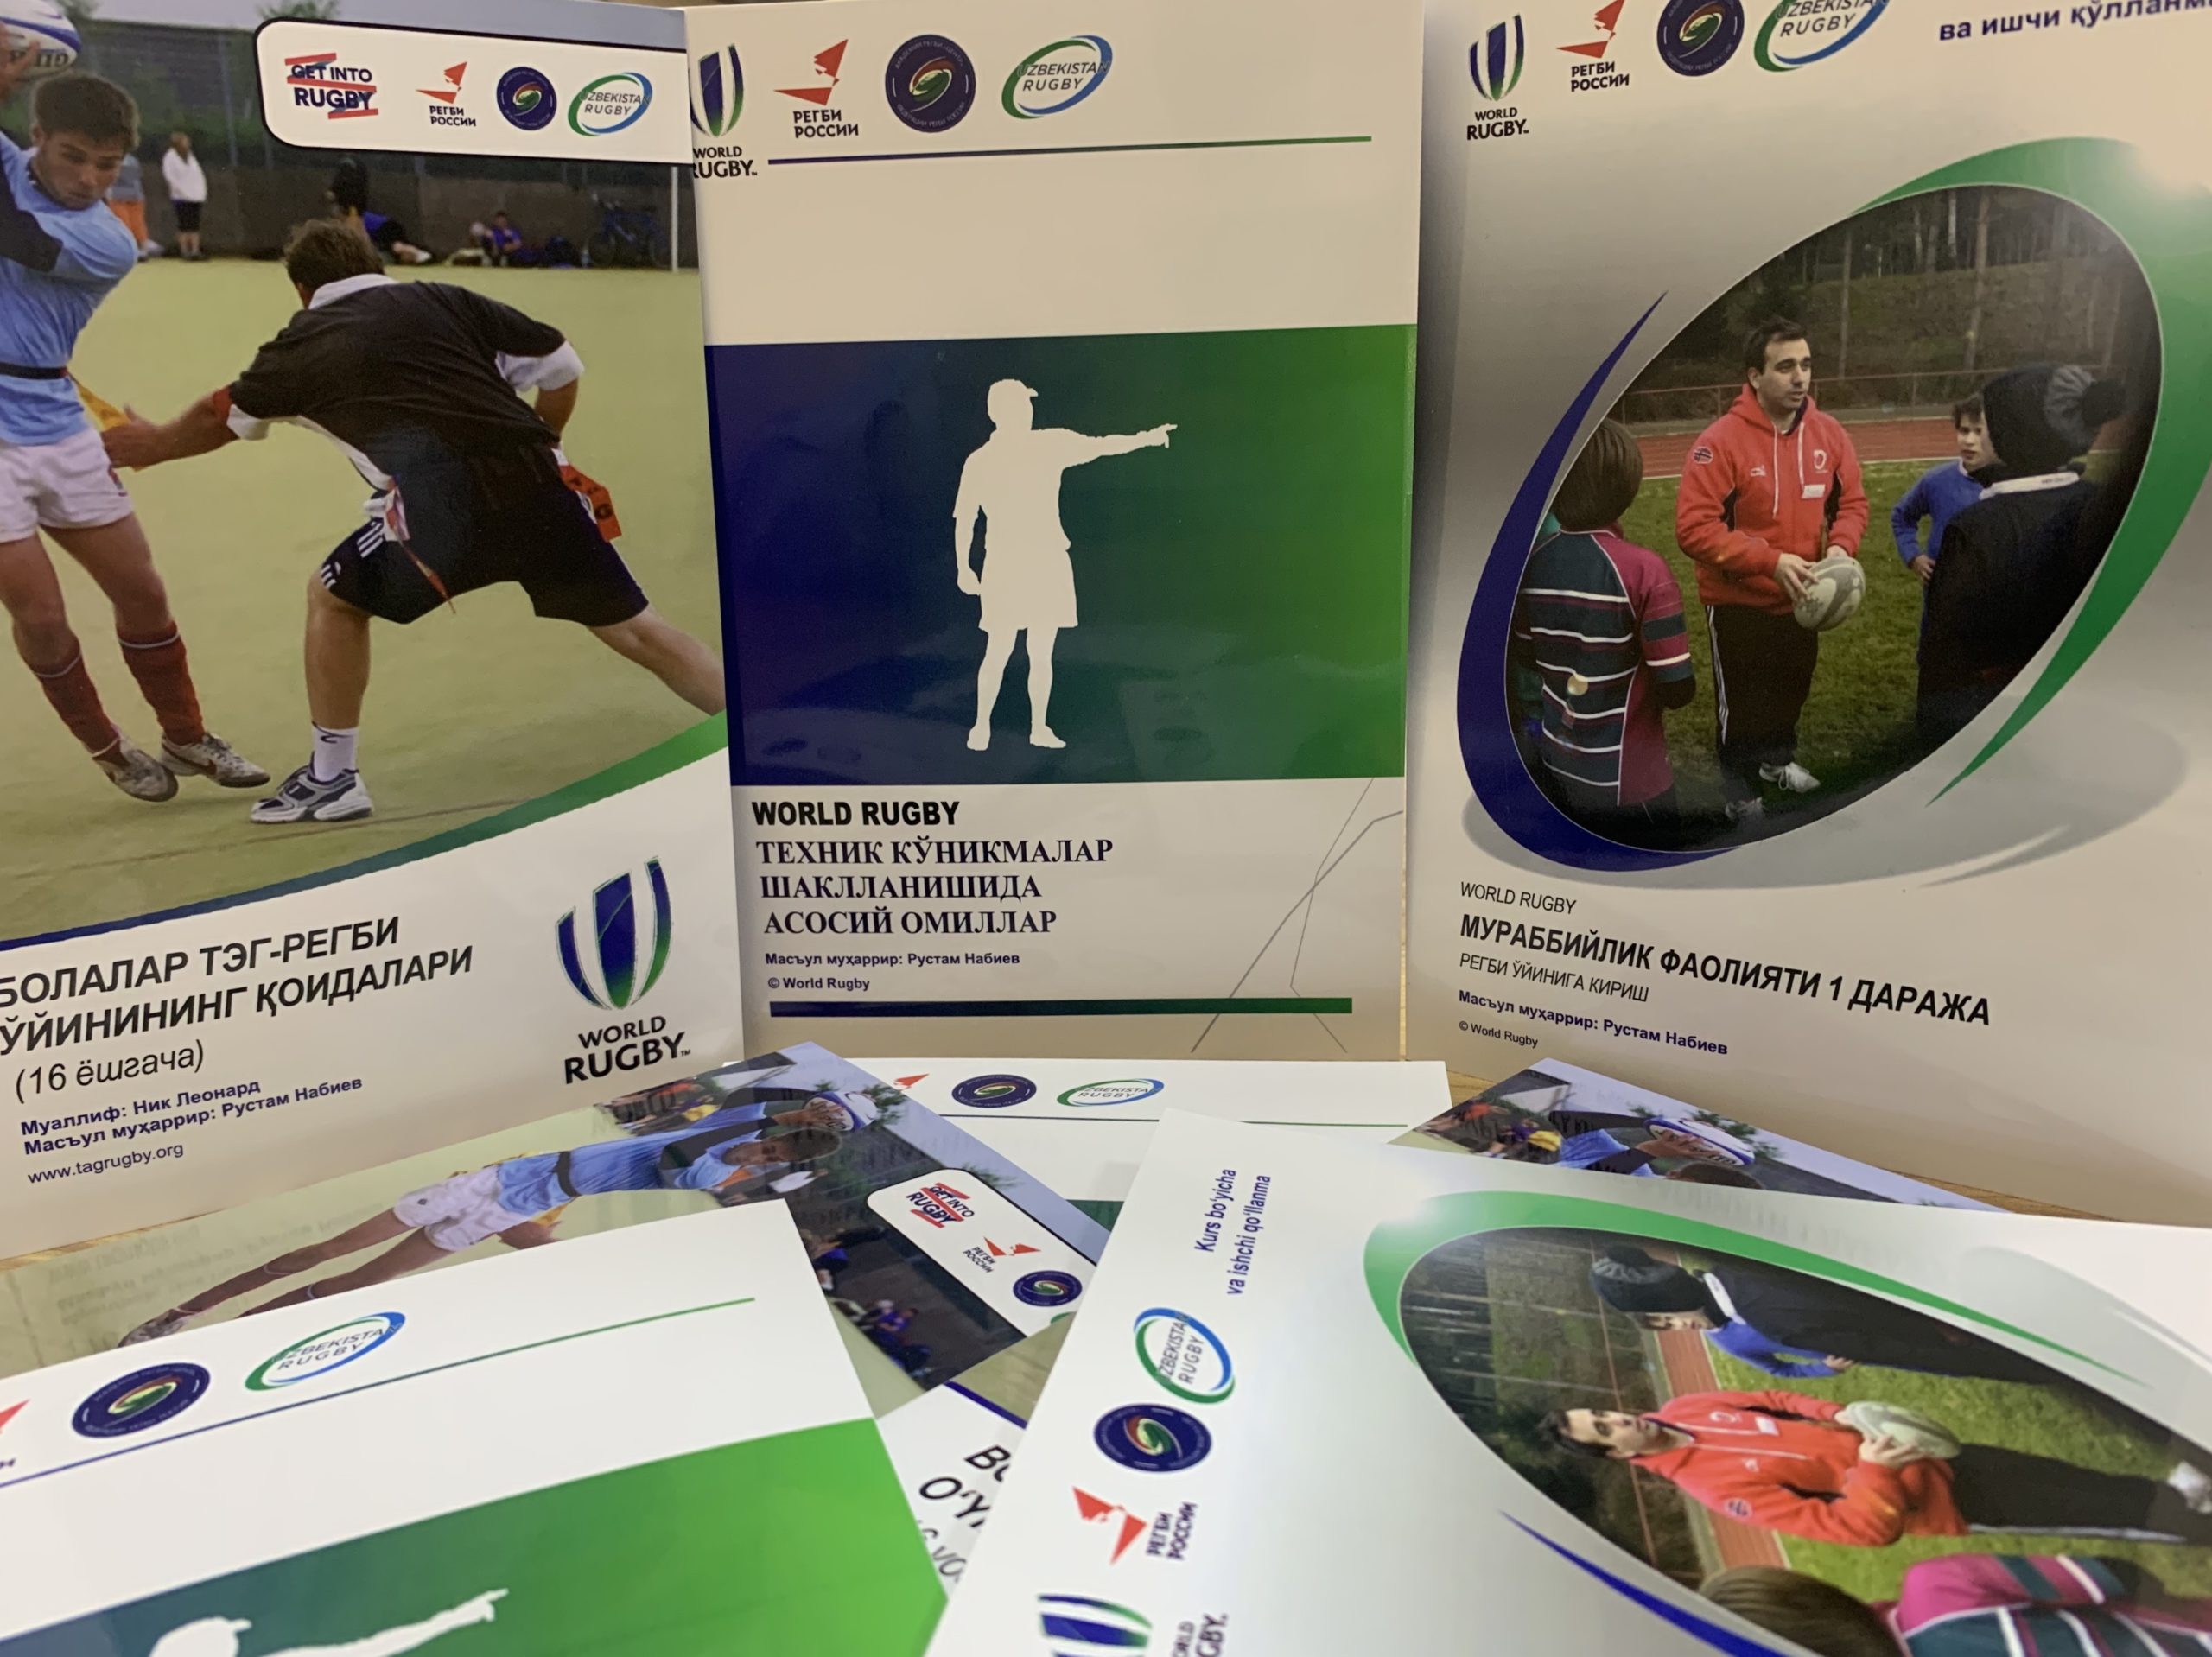 Федерацией подготовлено издание учебных пособий World Rugby на узбекском языке